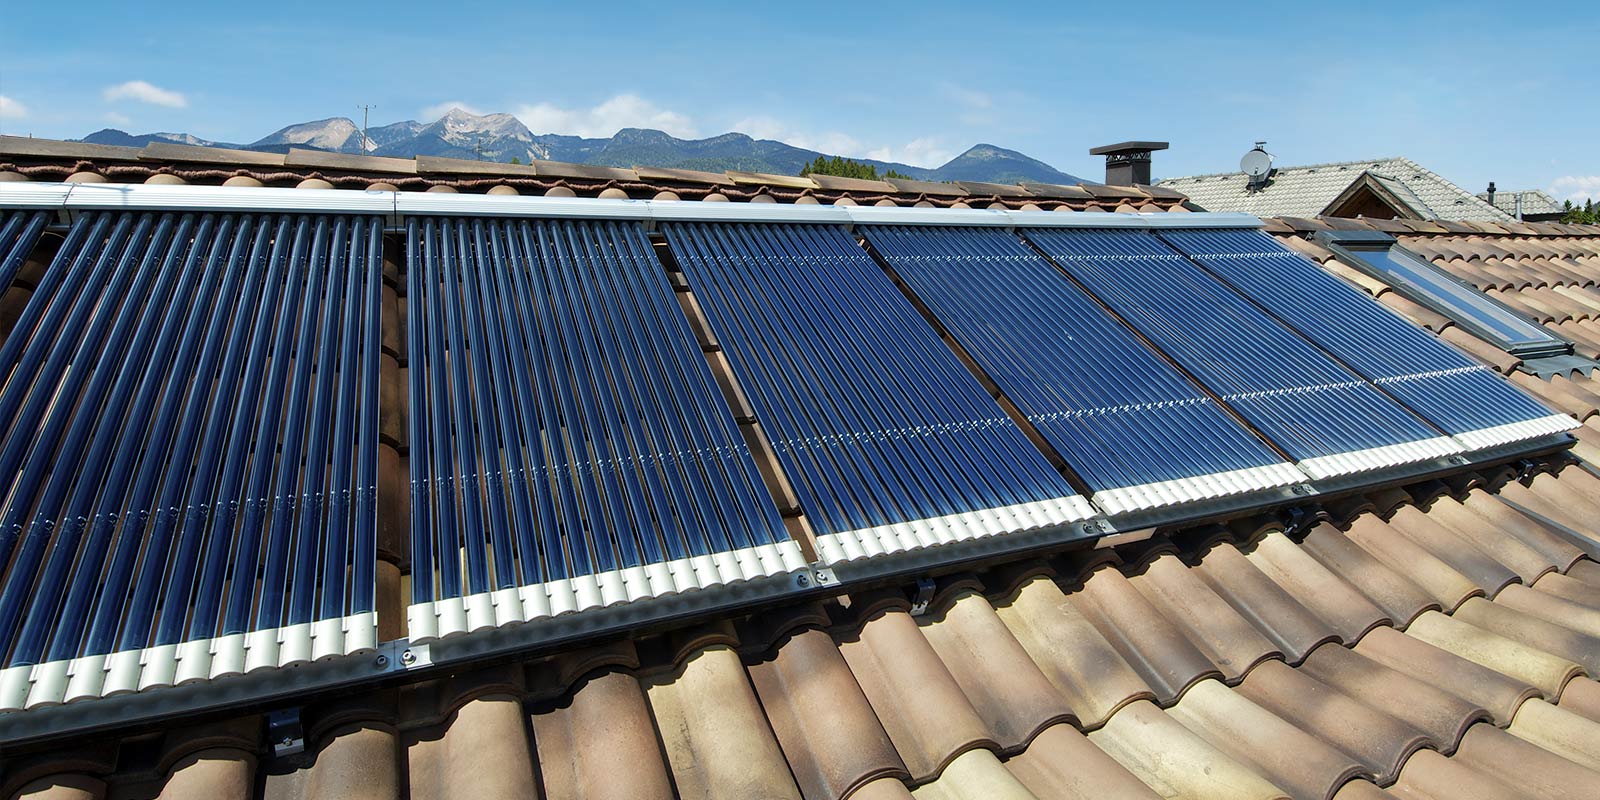 Solarthermie trägt umweltschonend zur Deckung des Warmwasser- und Heizwärmebedarfs bei